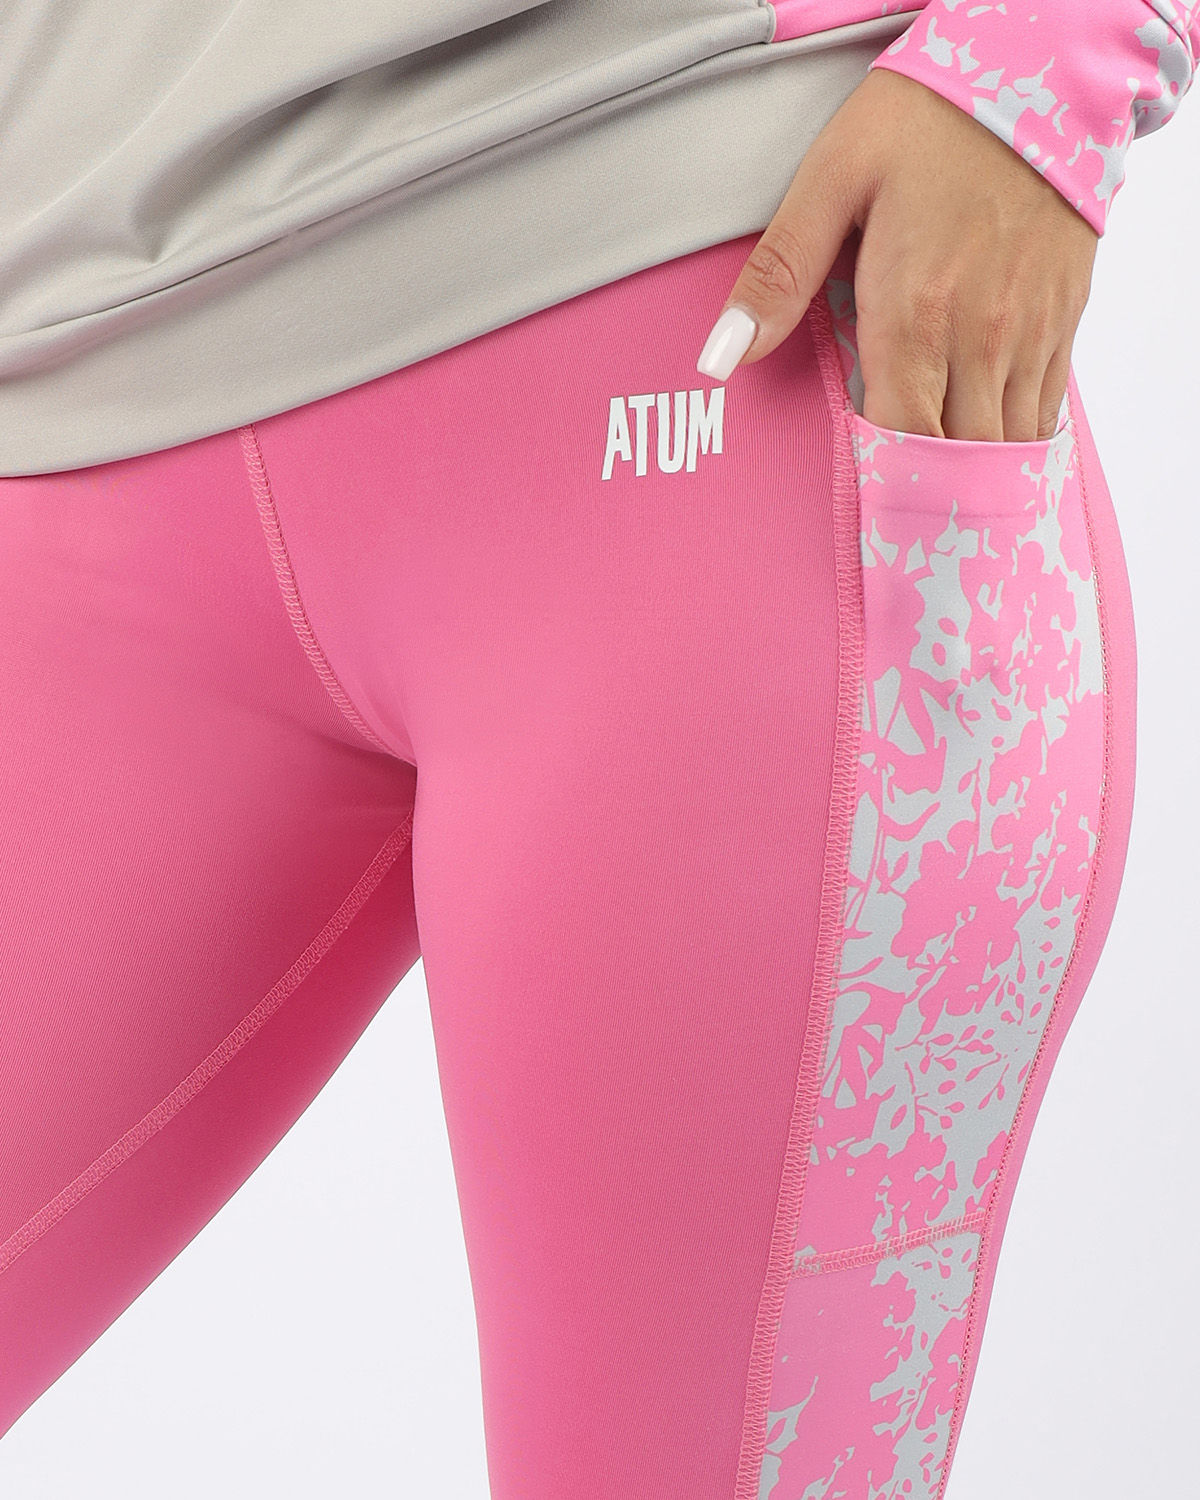 Atum Women's Printed Panel Leggings